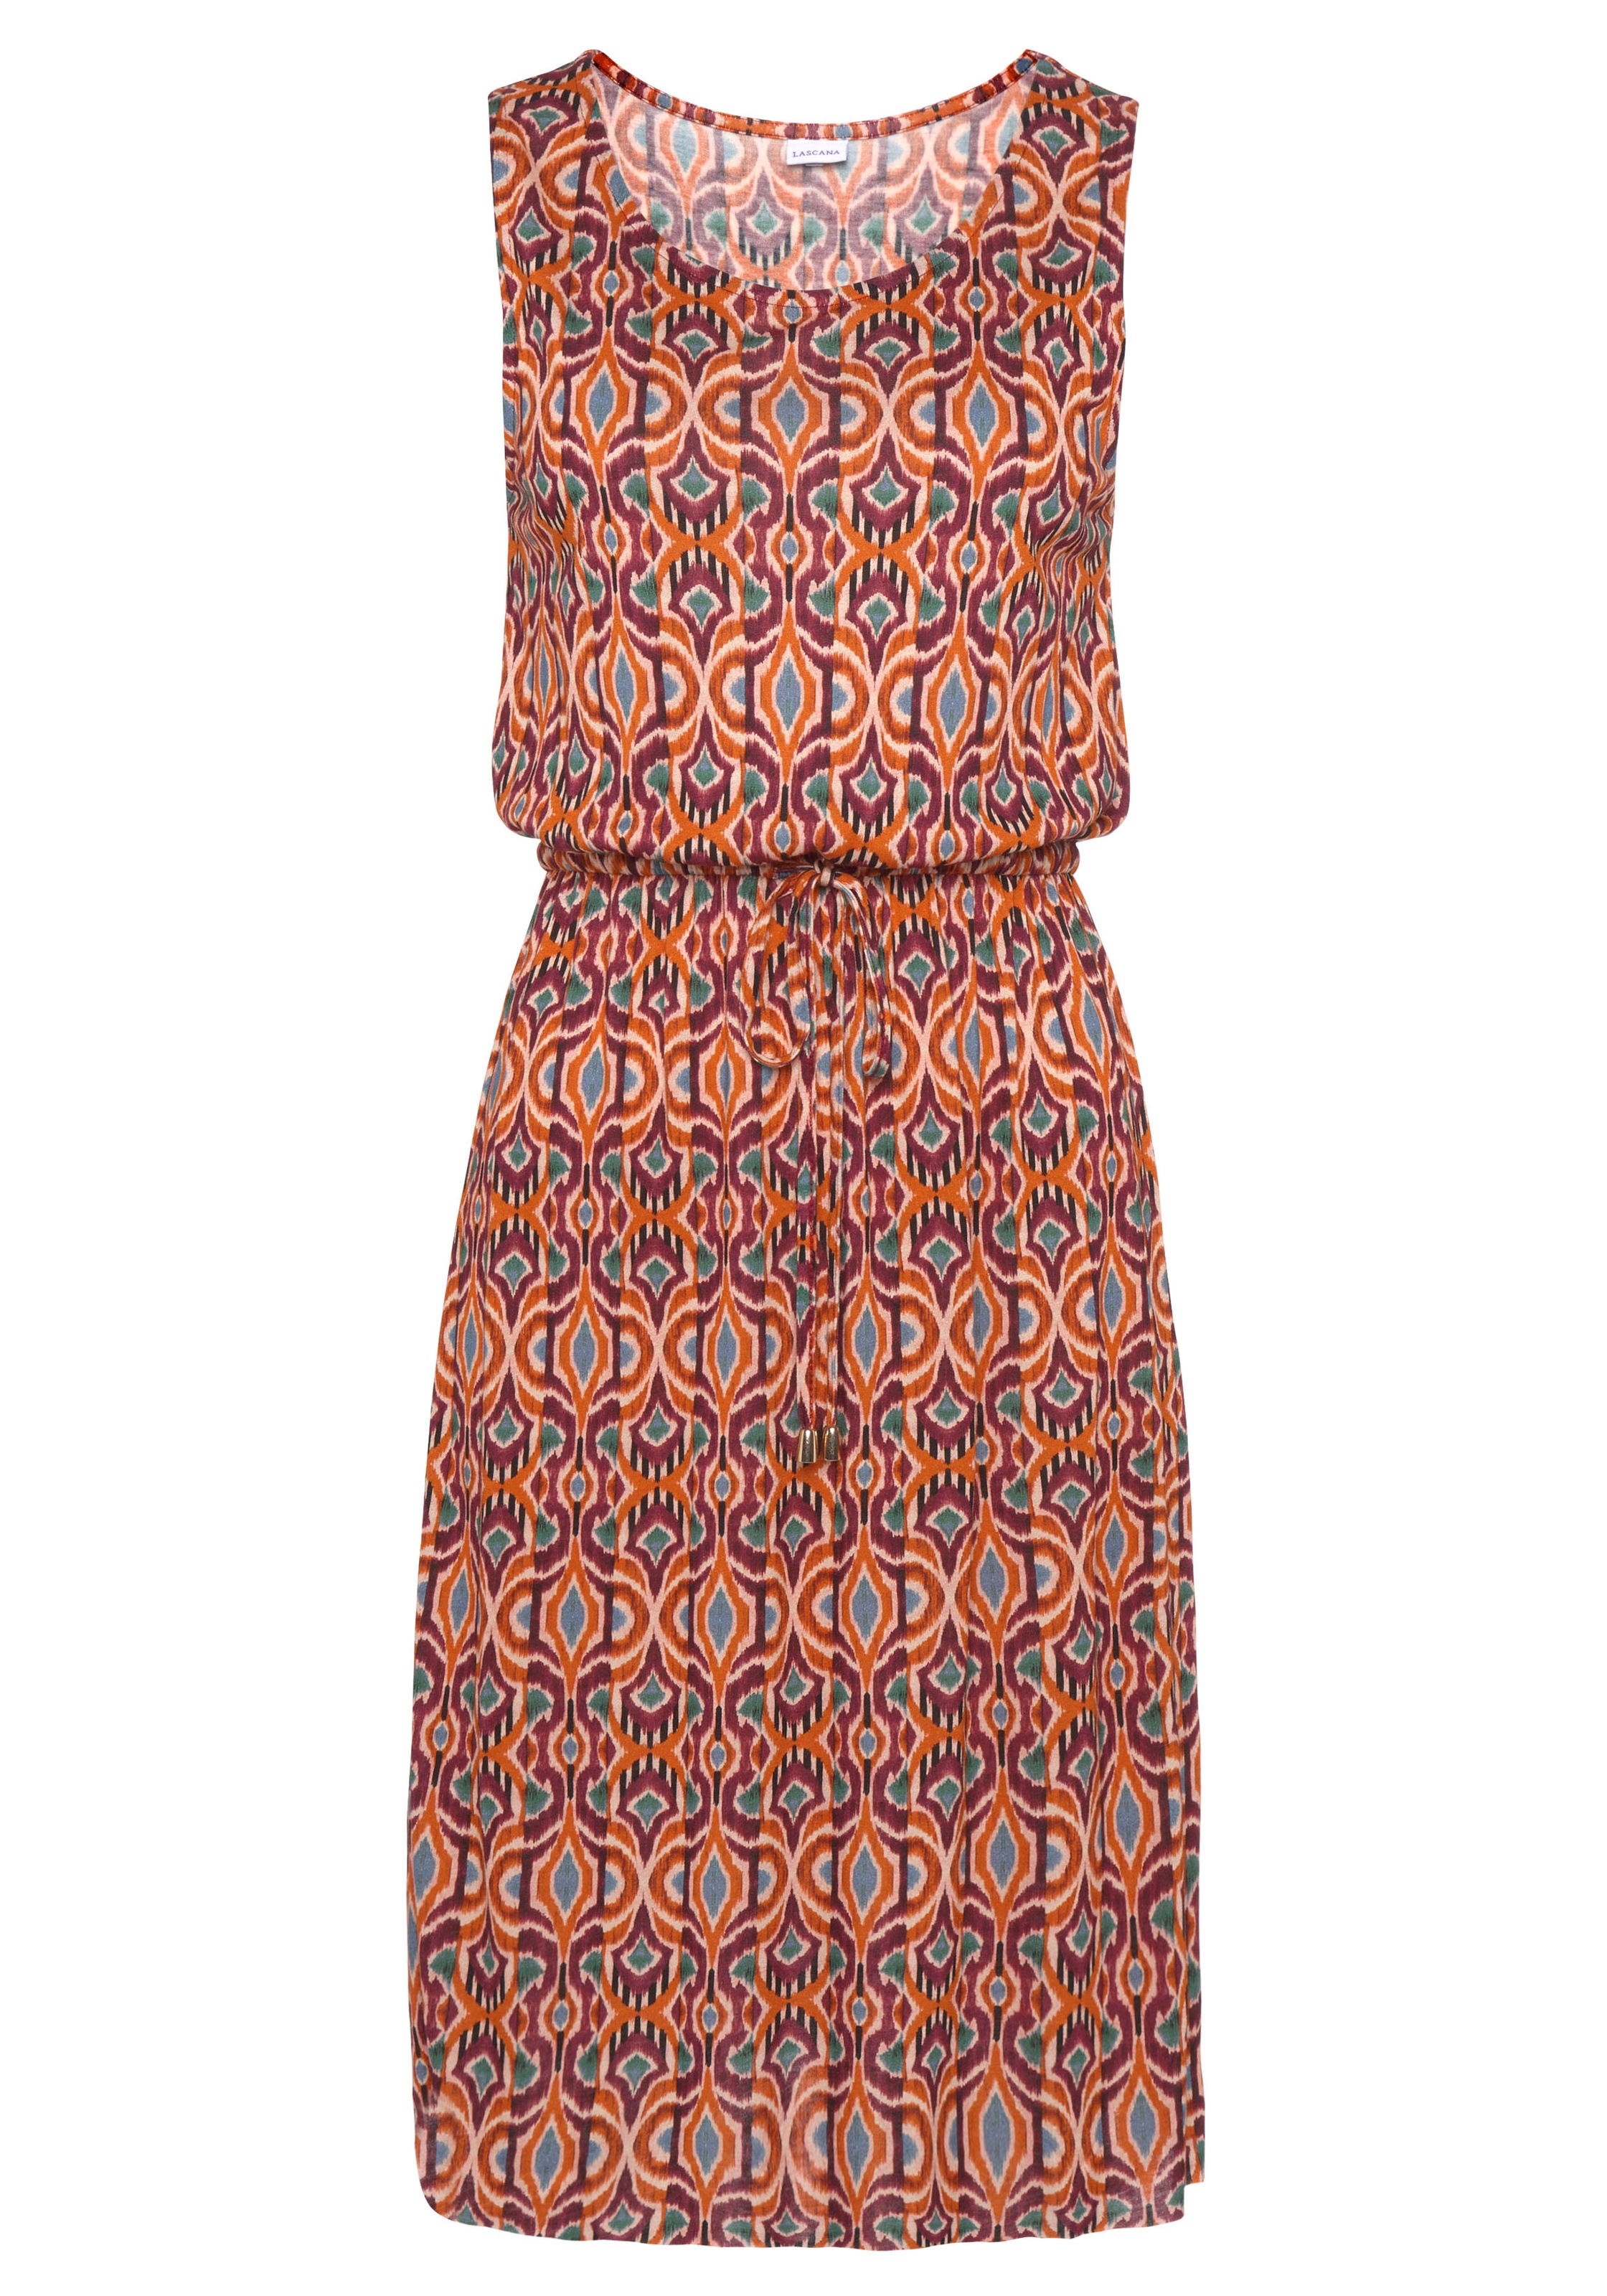 LASCANA Jerseykleid, mit Ethnodruck, leichtes Sommerkleid, Strandkleid